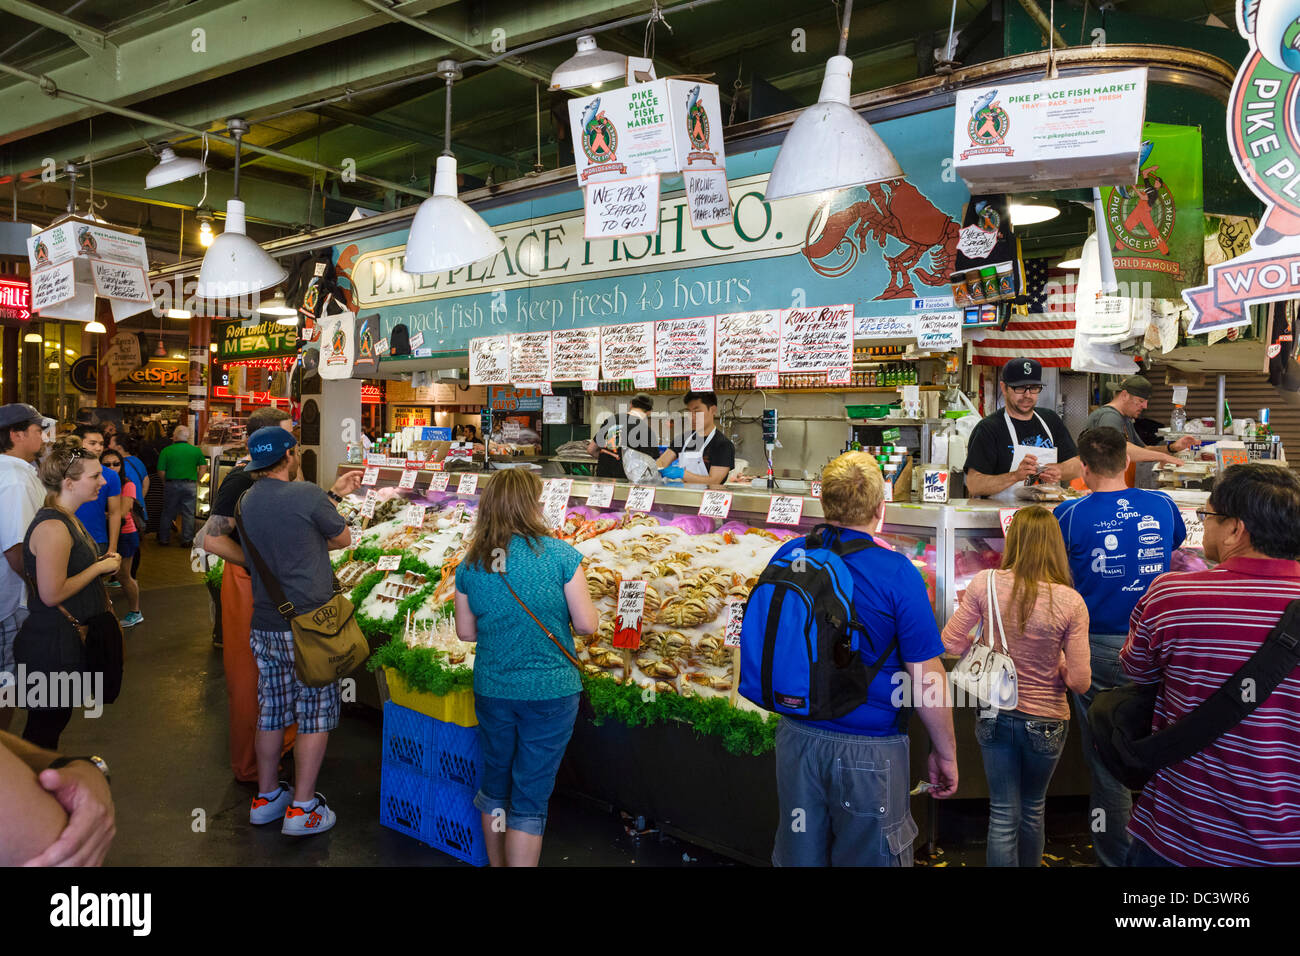 La célèbre société de pêche de Pike Place, blocage du Pike Place Market, Seattle, Washington, USA Banque D'Images